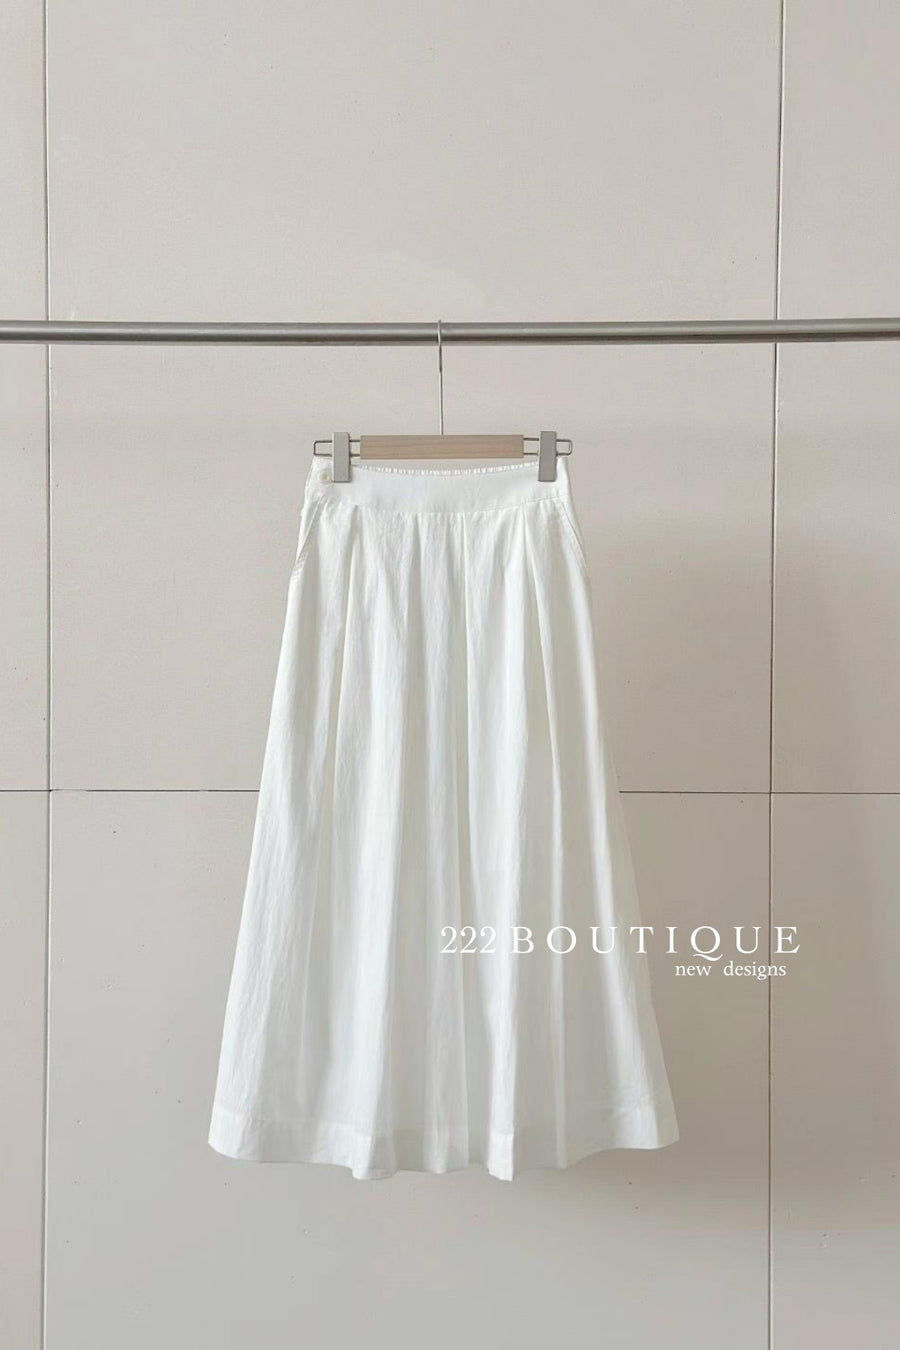 long skirt